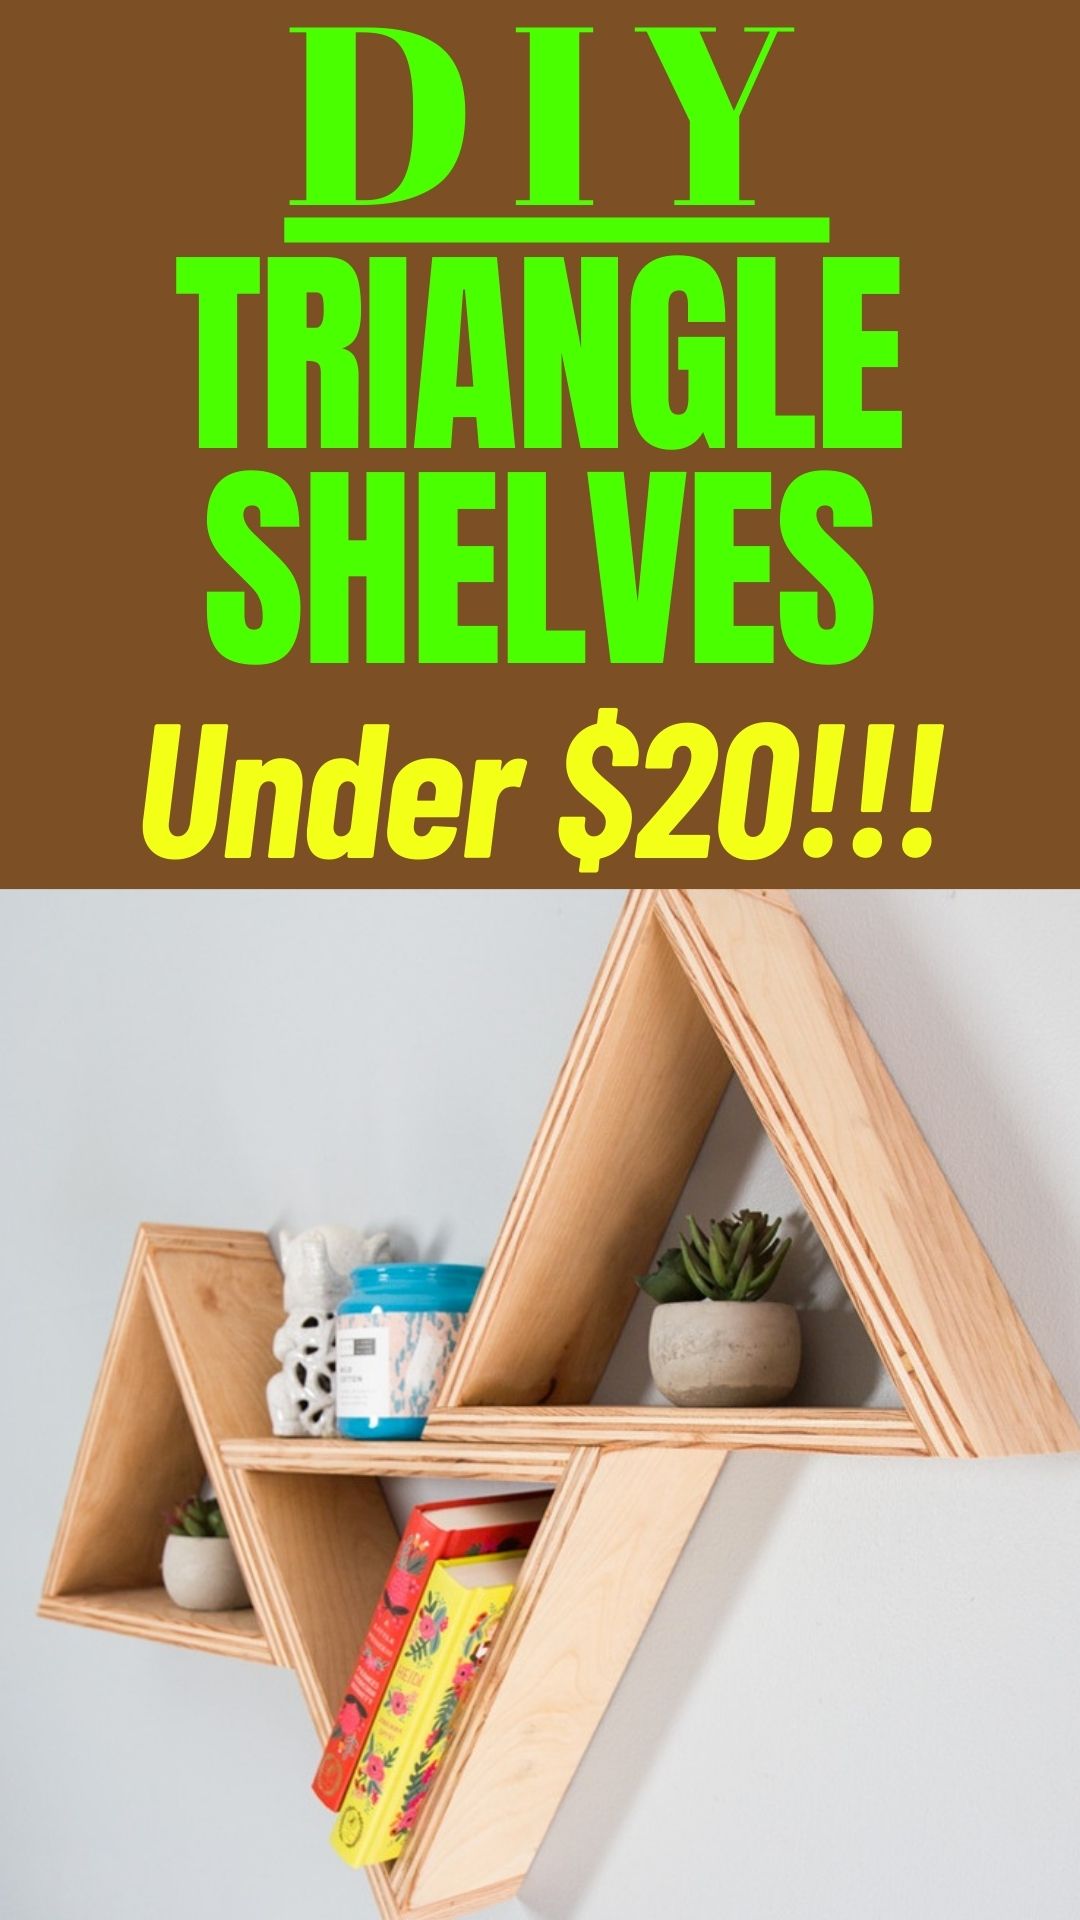 DIY triangle shelves